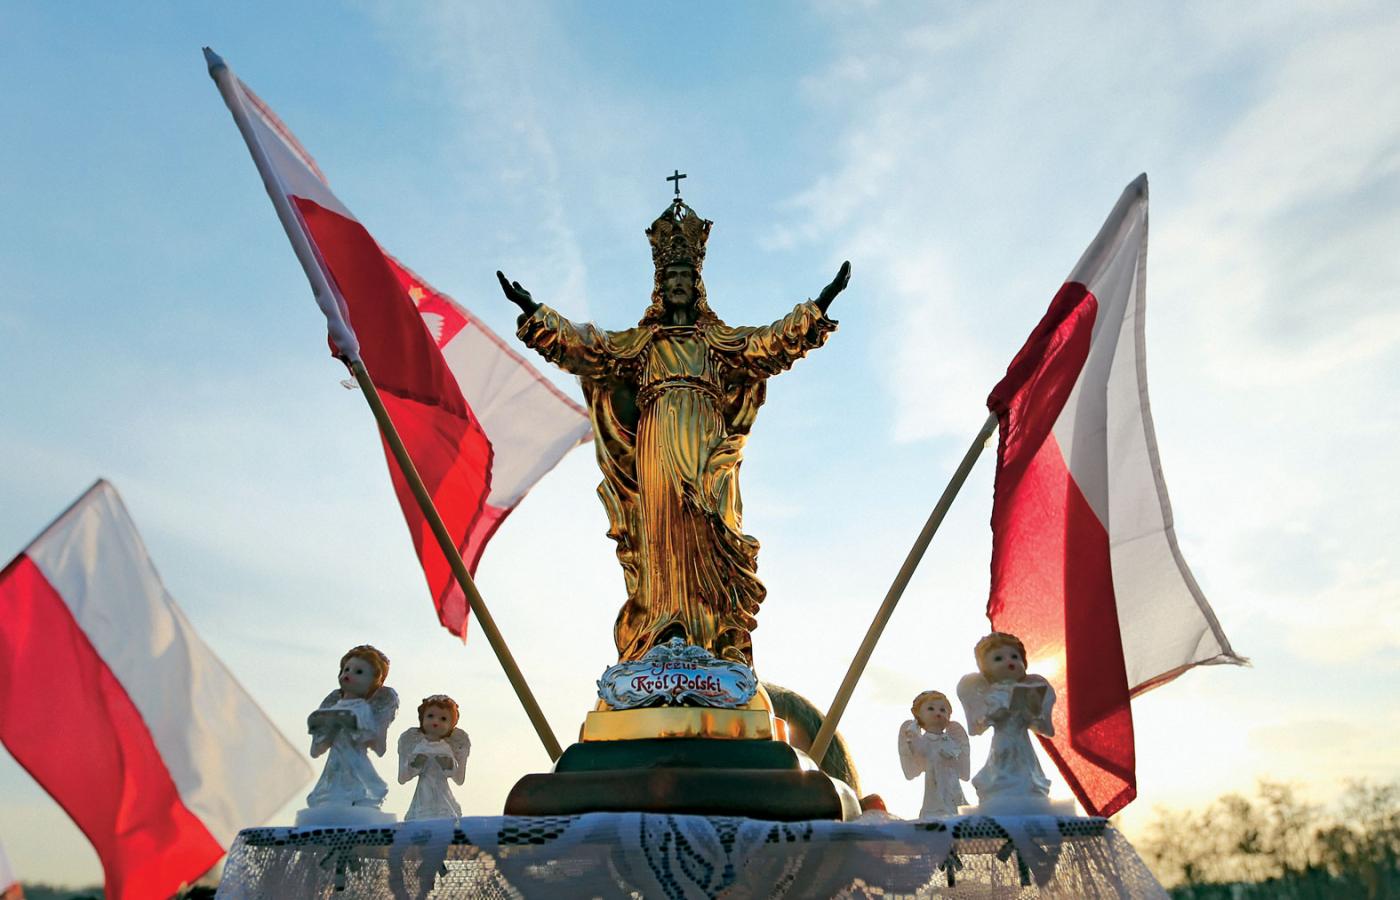 W 2006 r. cała Polska usłyszała wołanie o intronizację Chrystusa z trybuny sejmowej – wołał nieżyjący już poseł PiS Artur Górski.